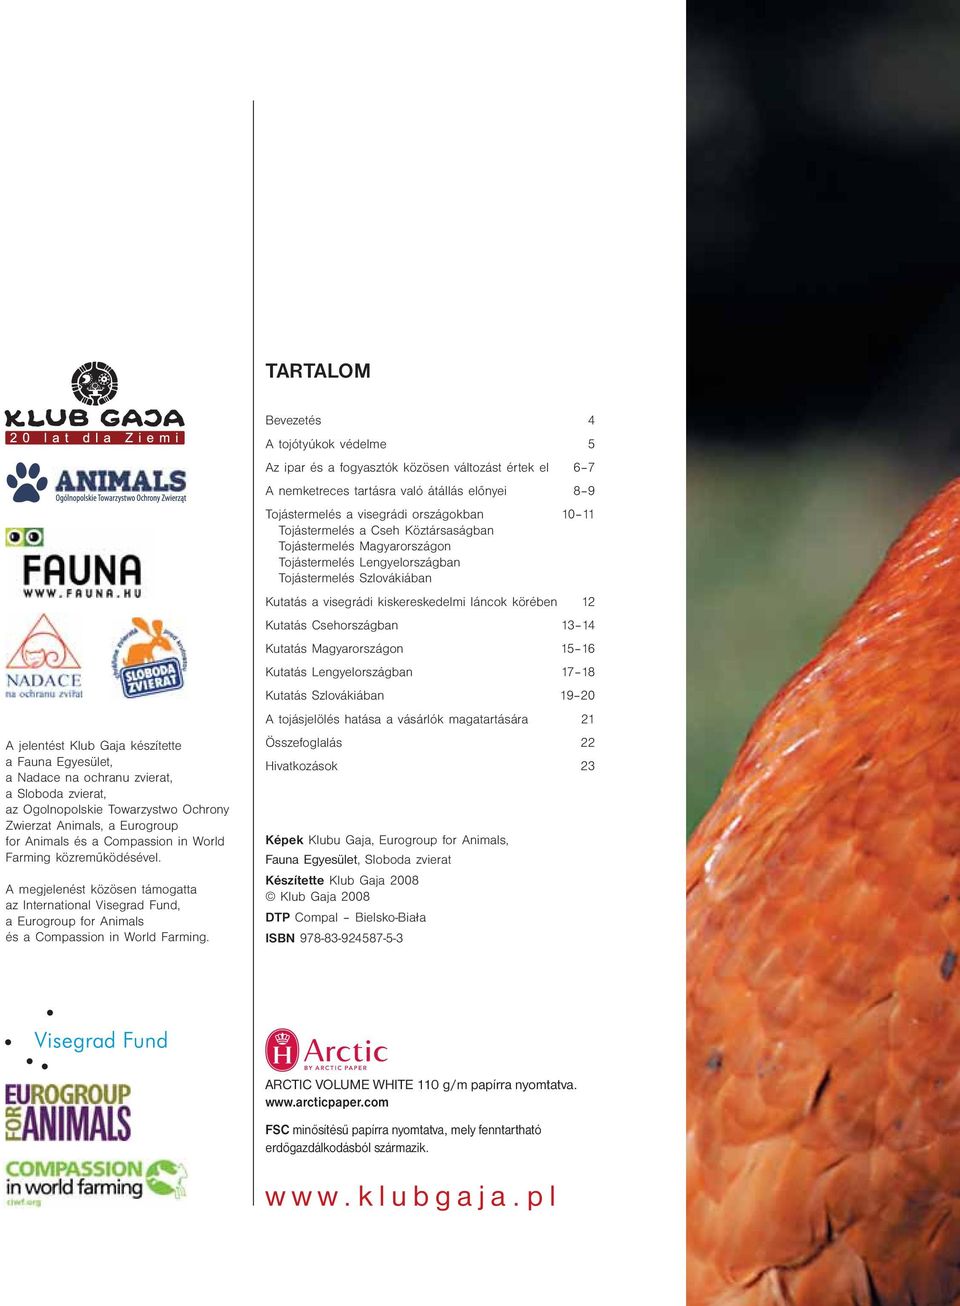 13 14 Kutatás Magyarországon 15 16 Kutatás Lengyelországban 17 18 Kutatás Szlovákiában 19 20 A tojásjelölés hatása a vásárlók magatartására 21 A jelentést Klub Gaja készítette a Fauna Egyesület, a